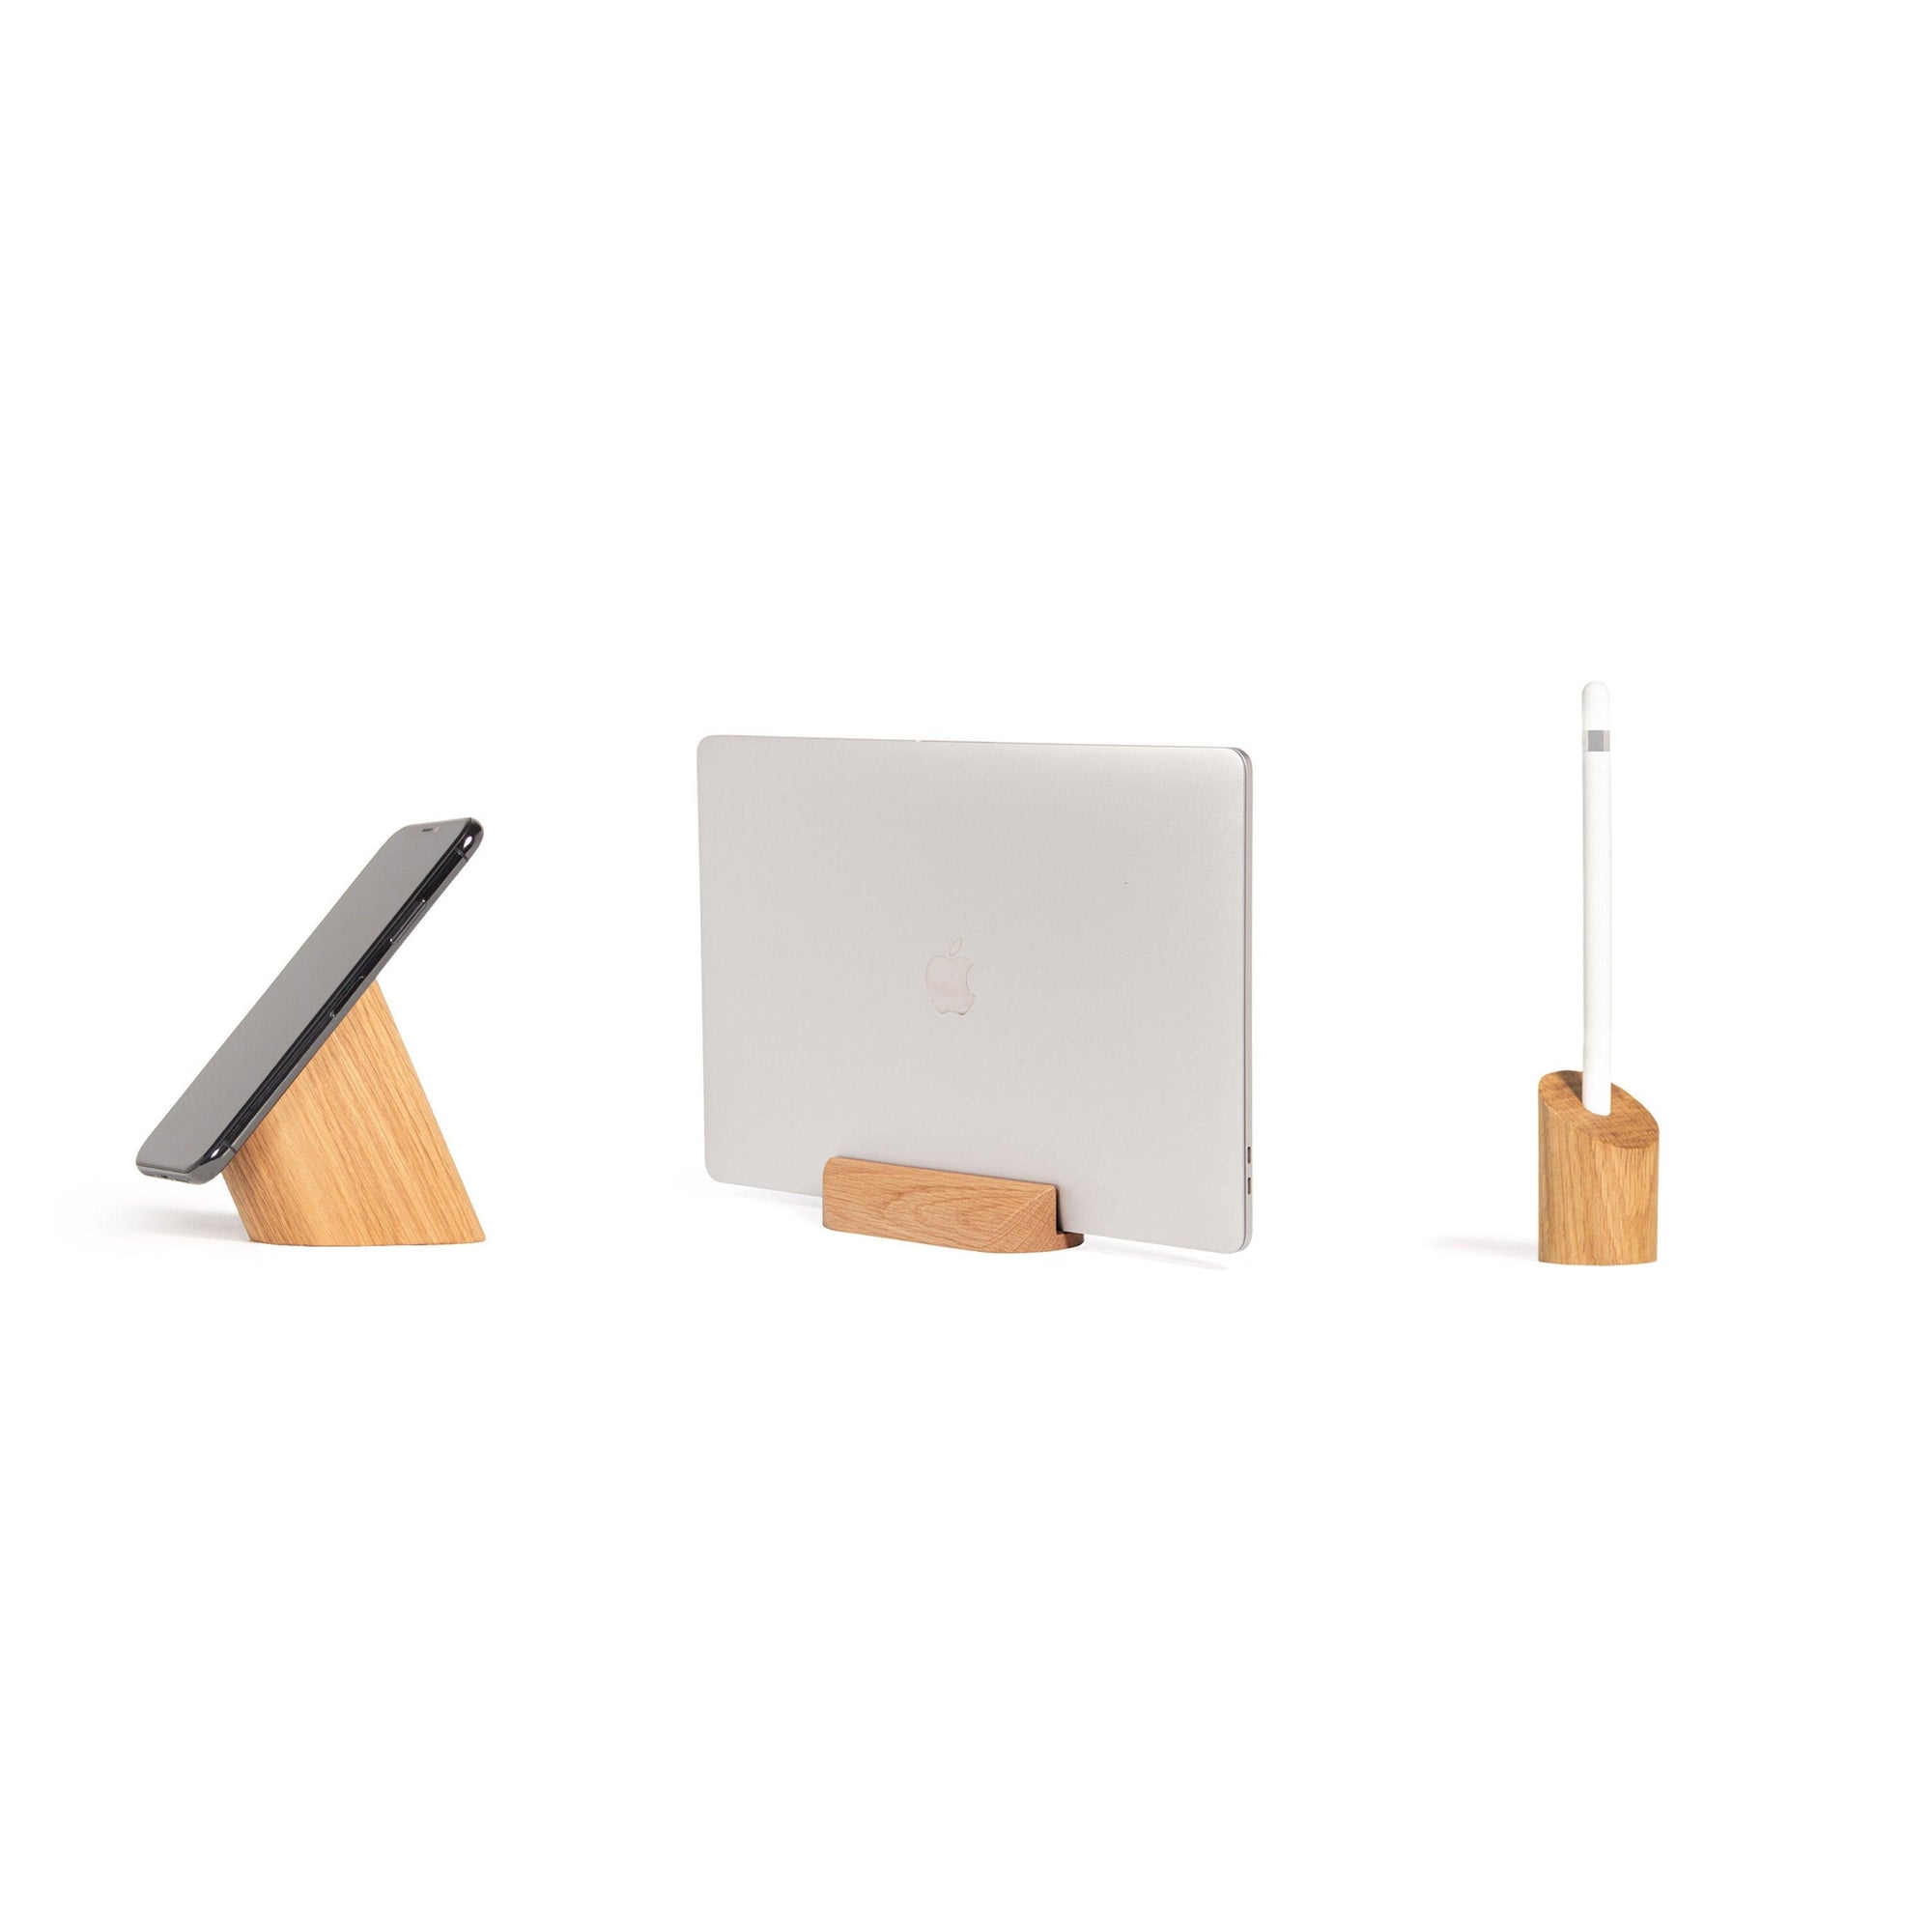 Set de 3 supports pour mobile, ordinateur portable & Apple Pencil - 37+ Design